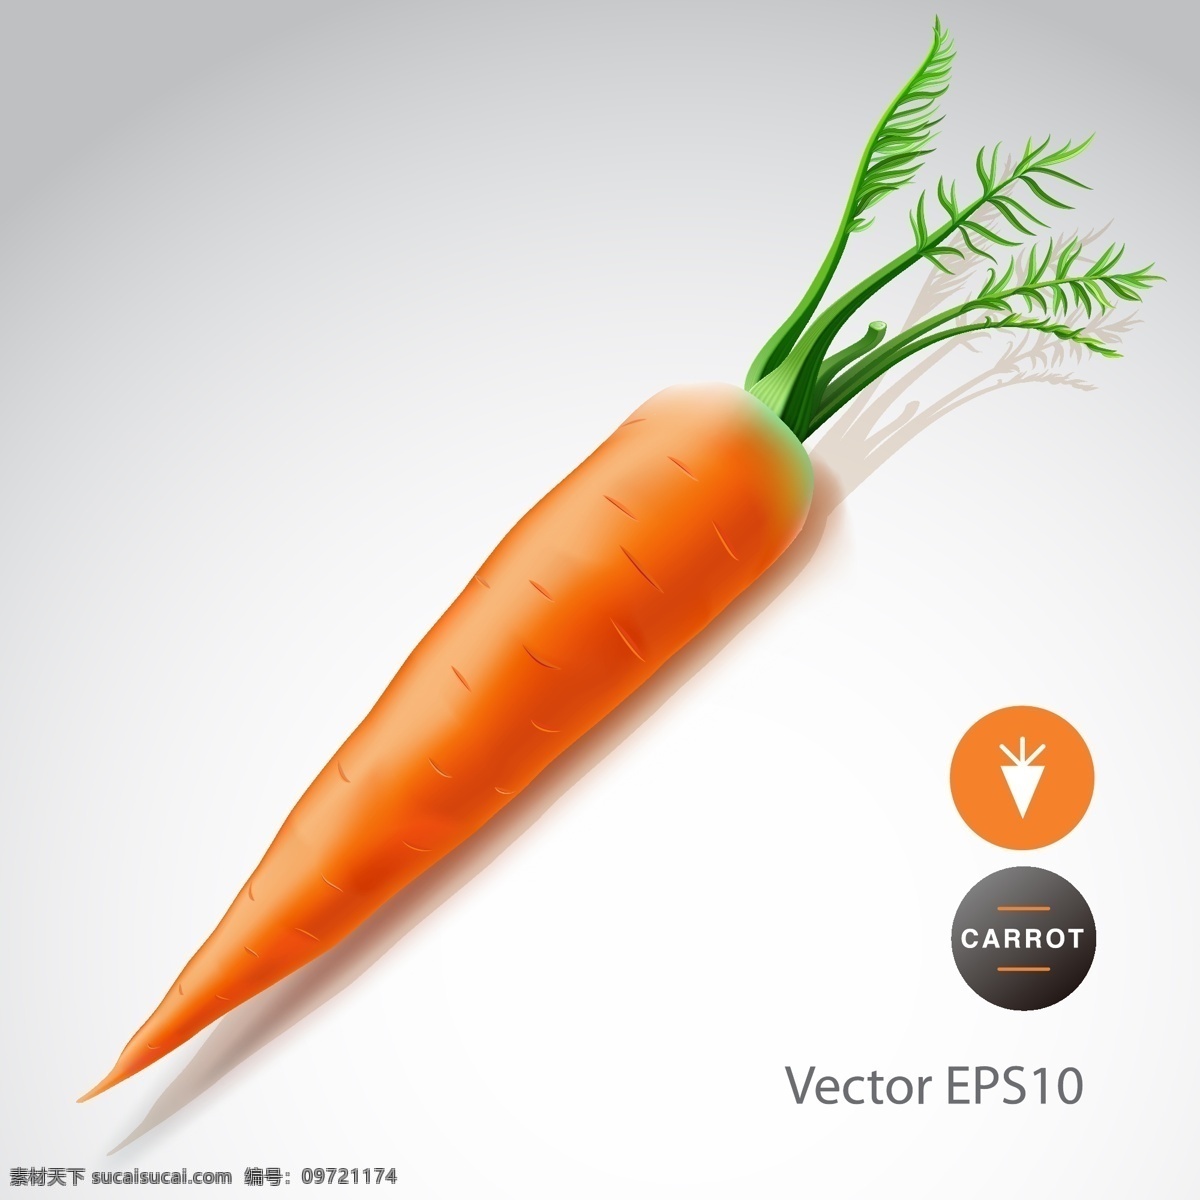 矢量红萝卜 卡通红萝卜 红萝卜插画 红萝卜插图 手绘红萝卜 蔬菜红萝卜 食物 生物世界 蔬菜